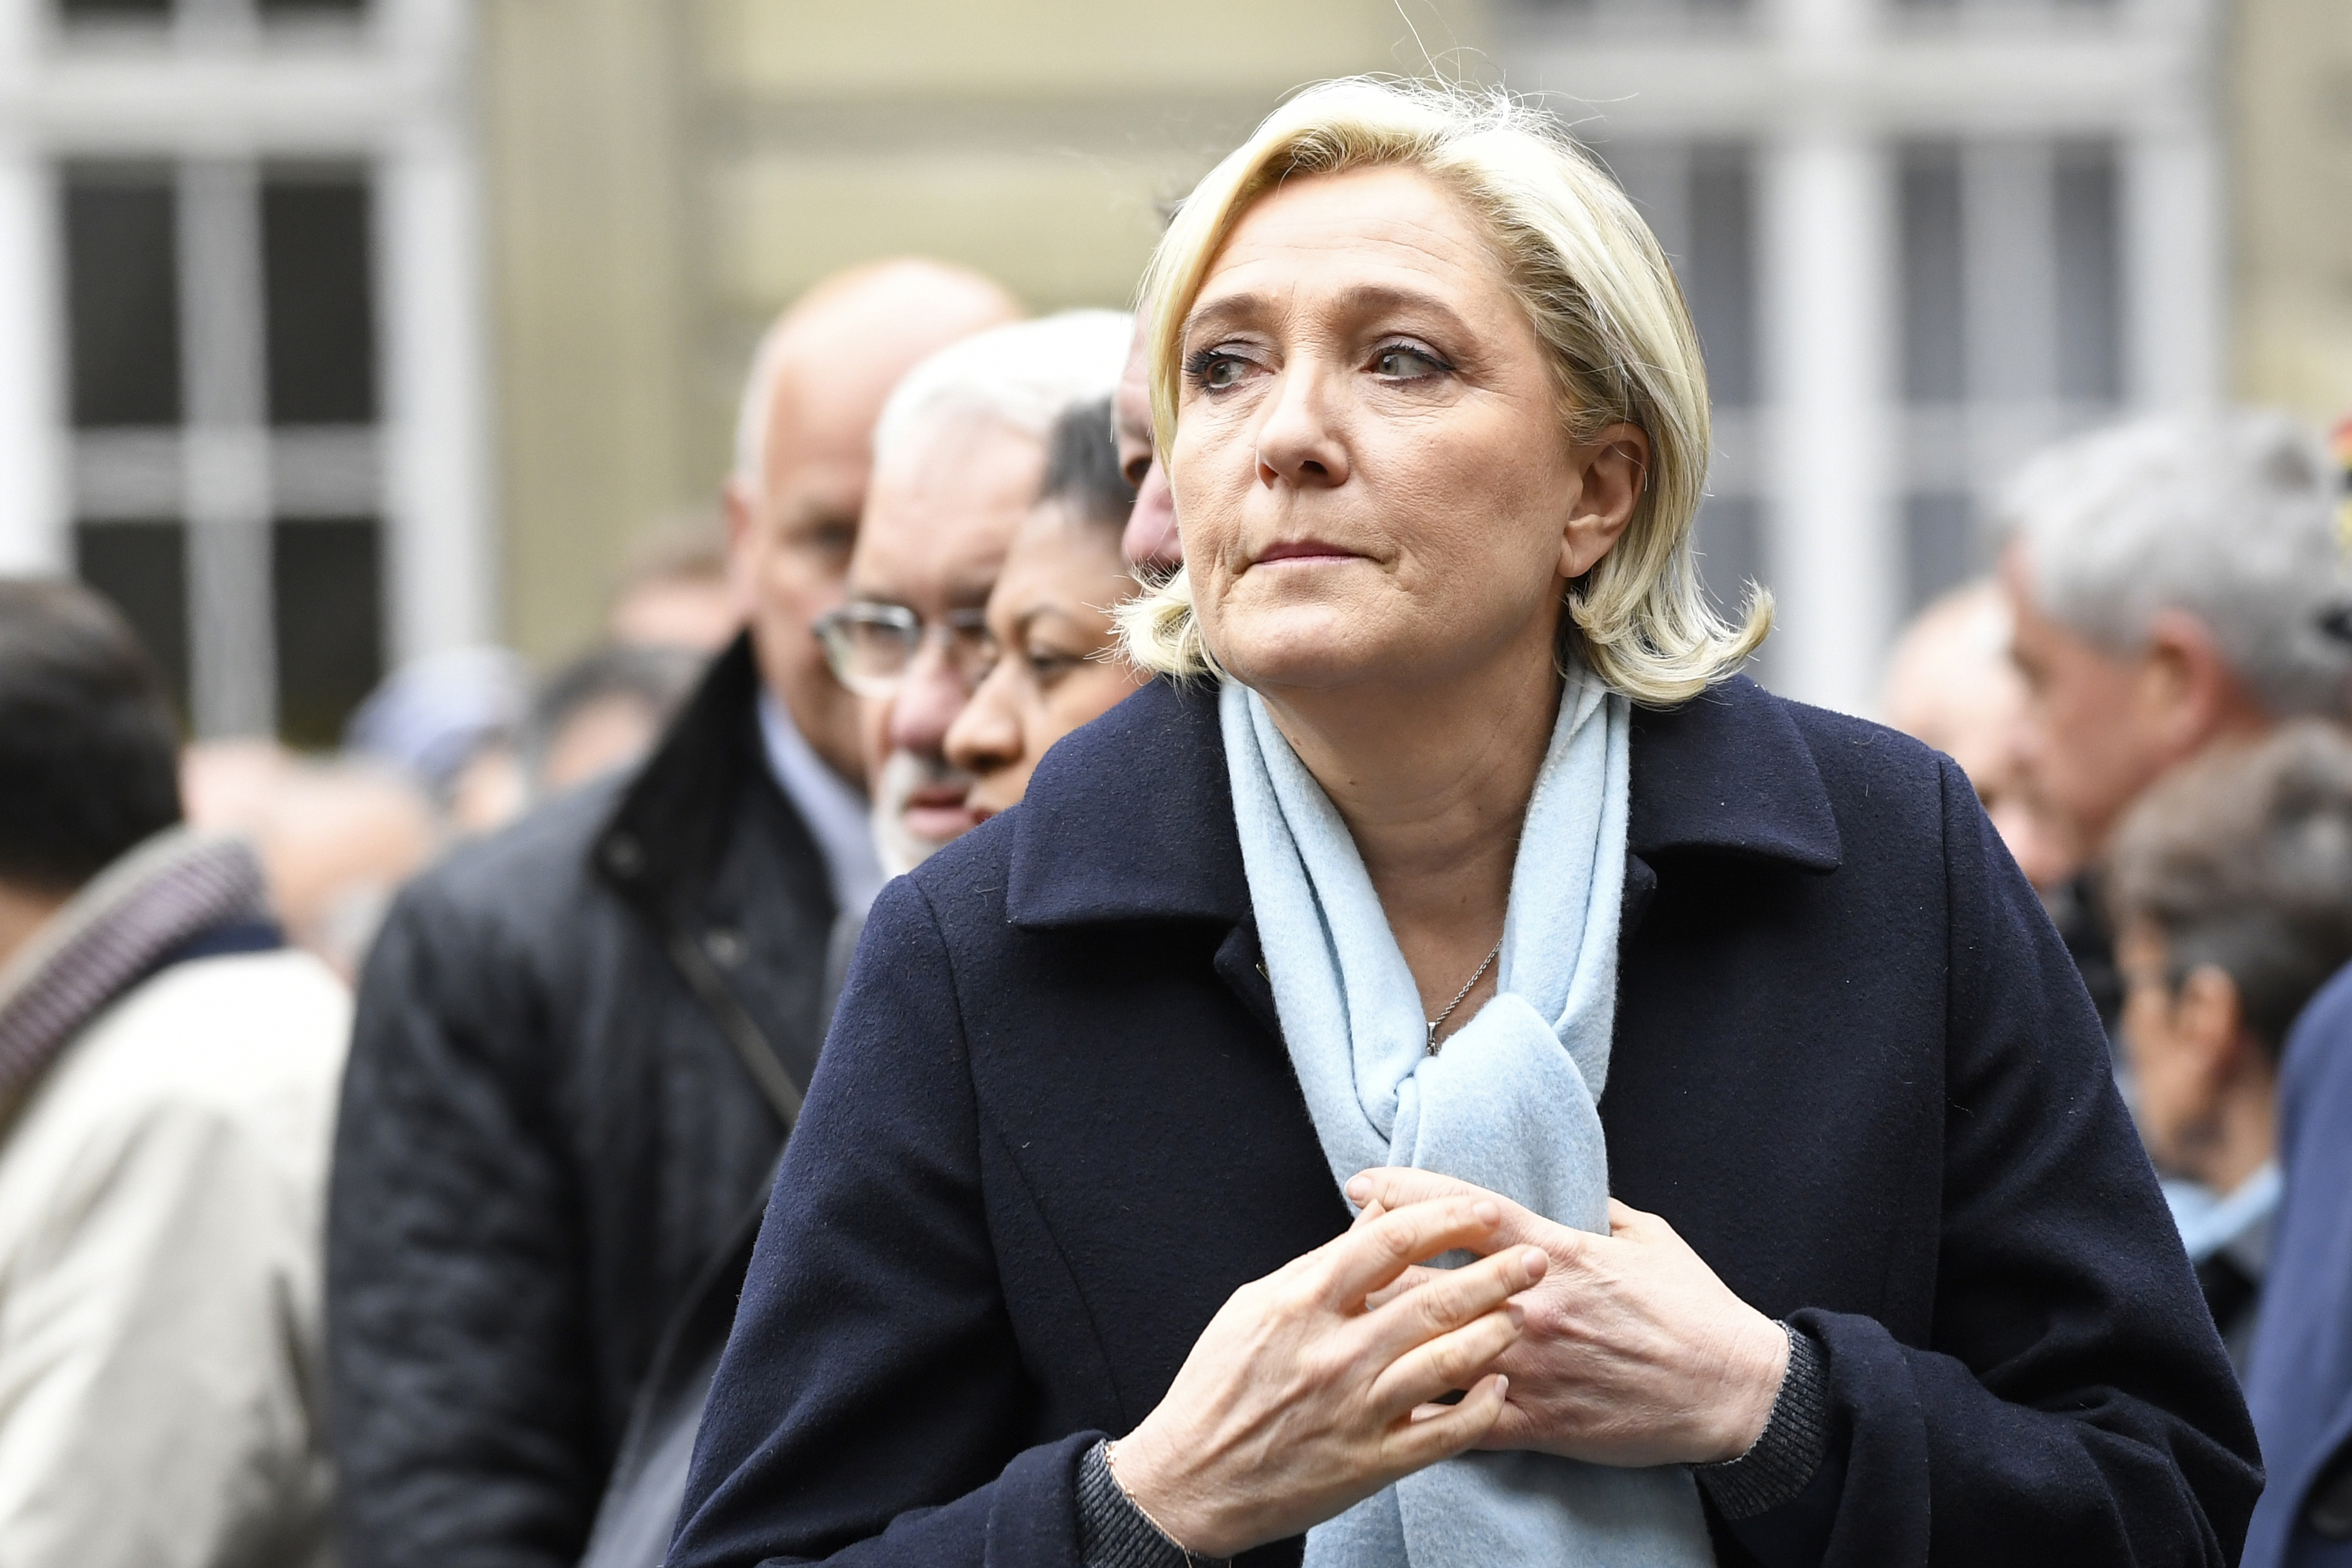 Iniciaron proceso para retirar inmunidad a Marine Le Pen